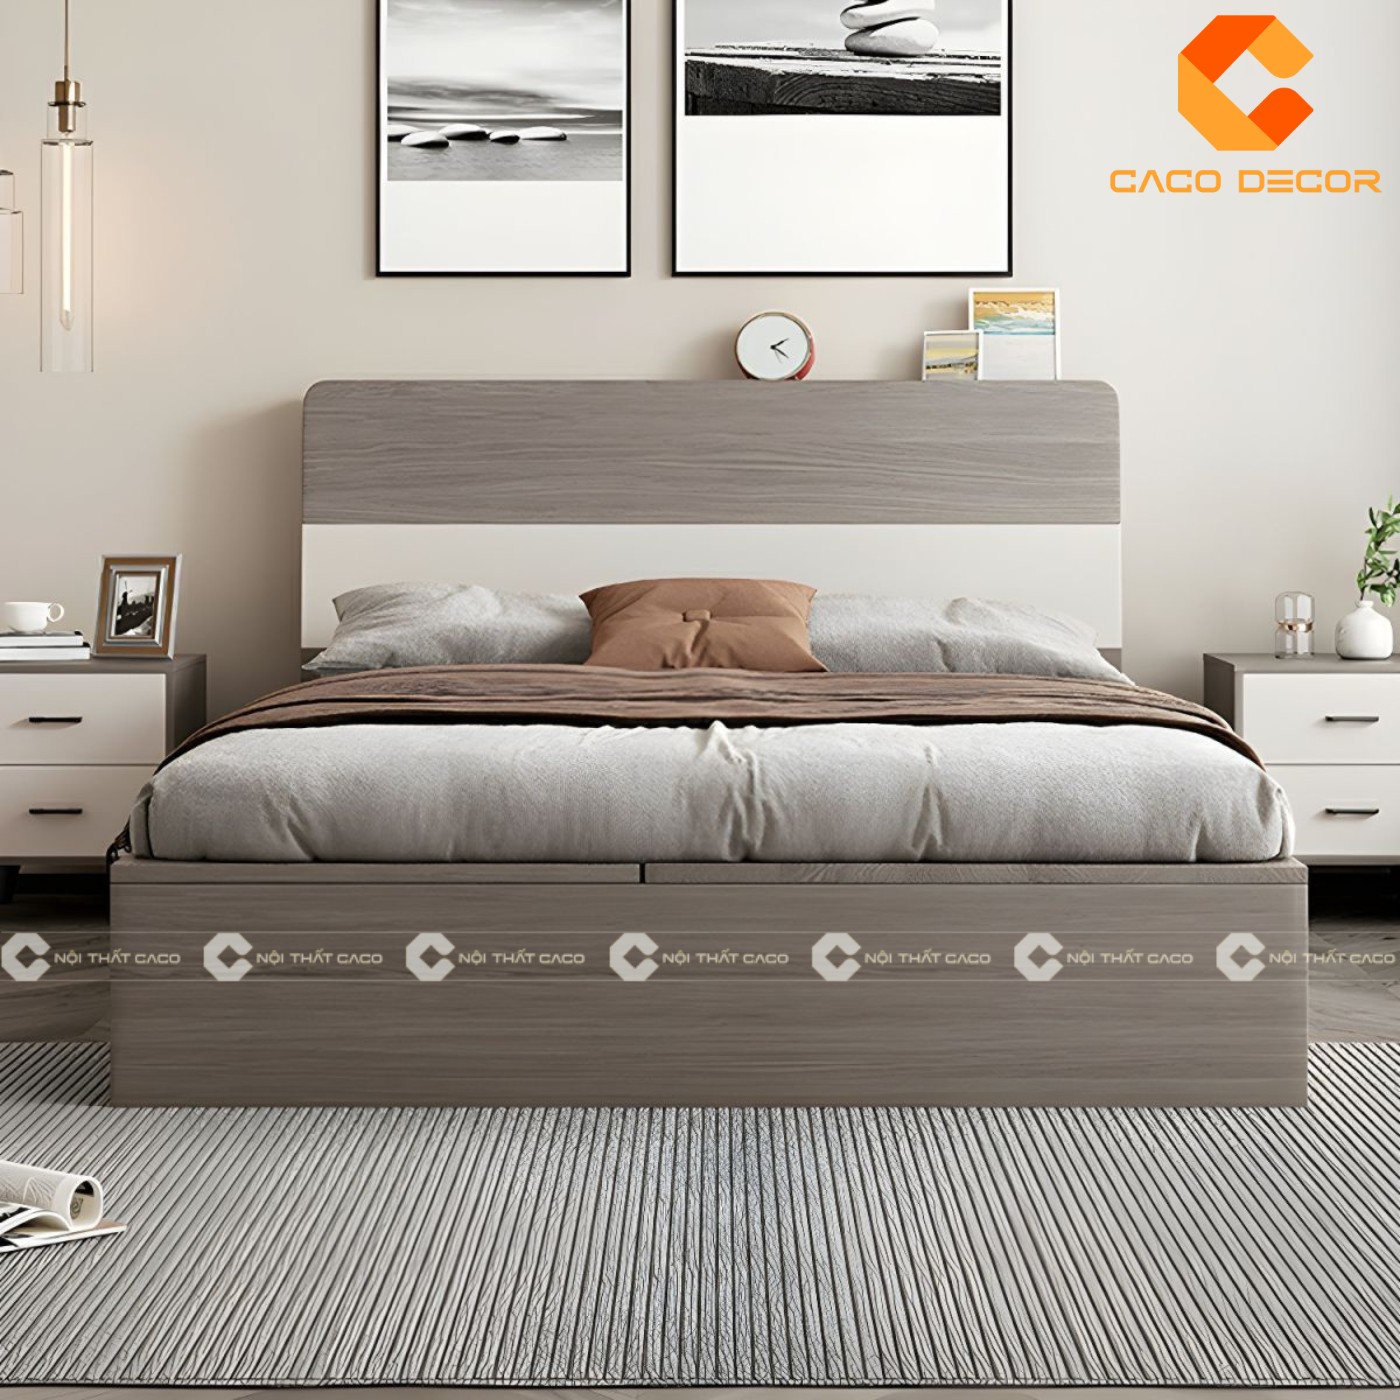 Giường ngủ gỗ công nghiệp đẹp, chất lượng với giá tốt nhất thị trường 19